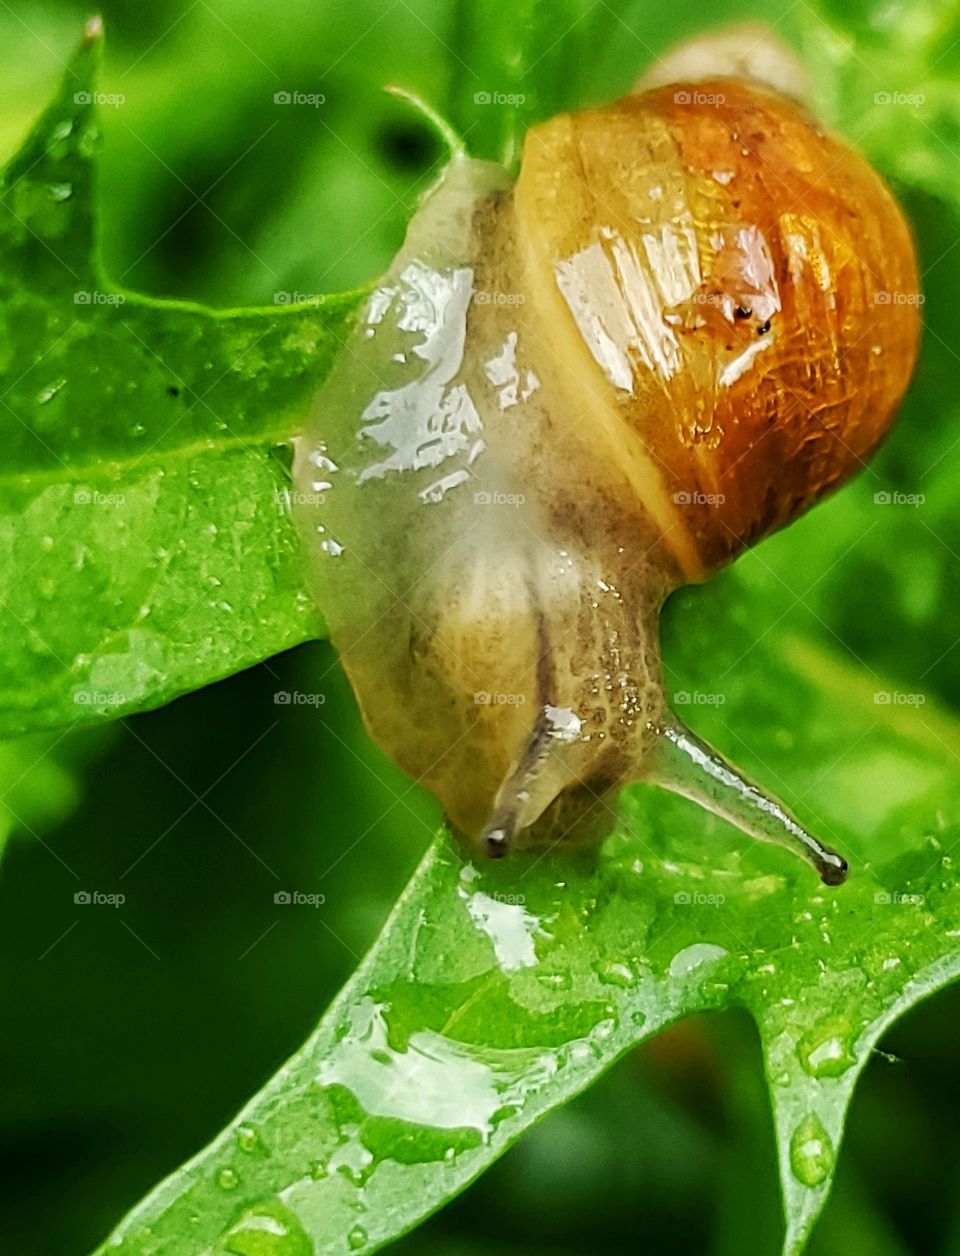 Little slug on leaf 1